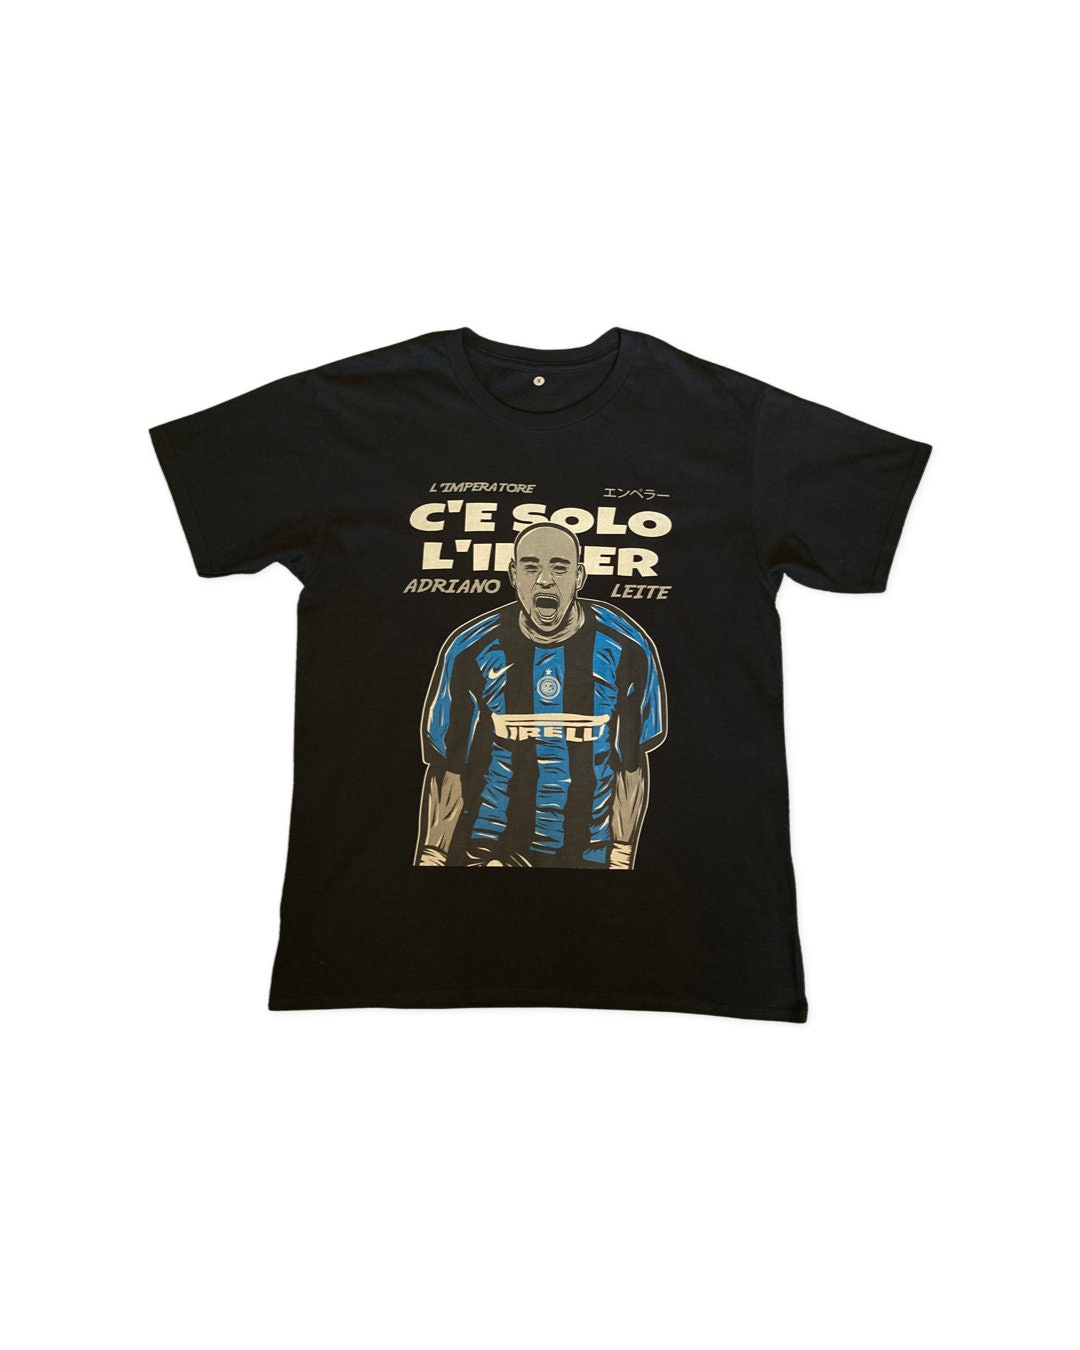 € 20.75  Retro Shirt 1998-1999 Inter Milan Home Soccer Jersey Football  Shirt Sale